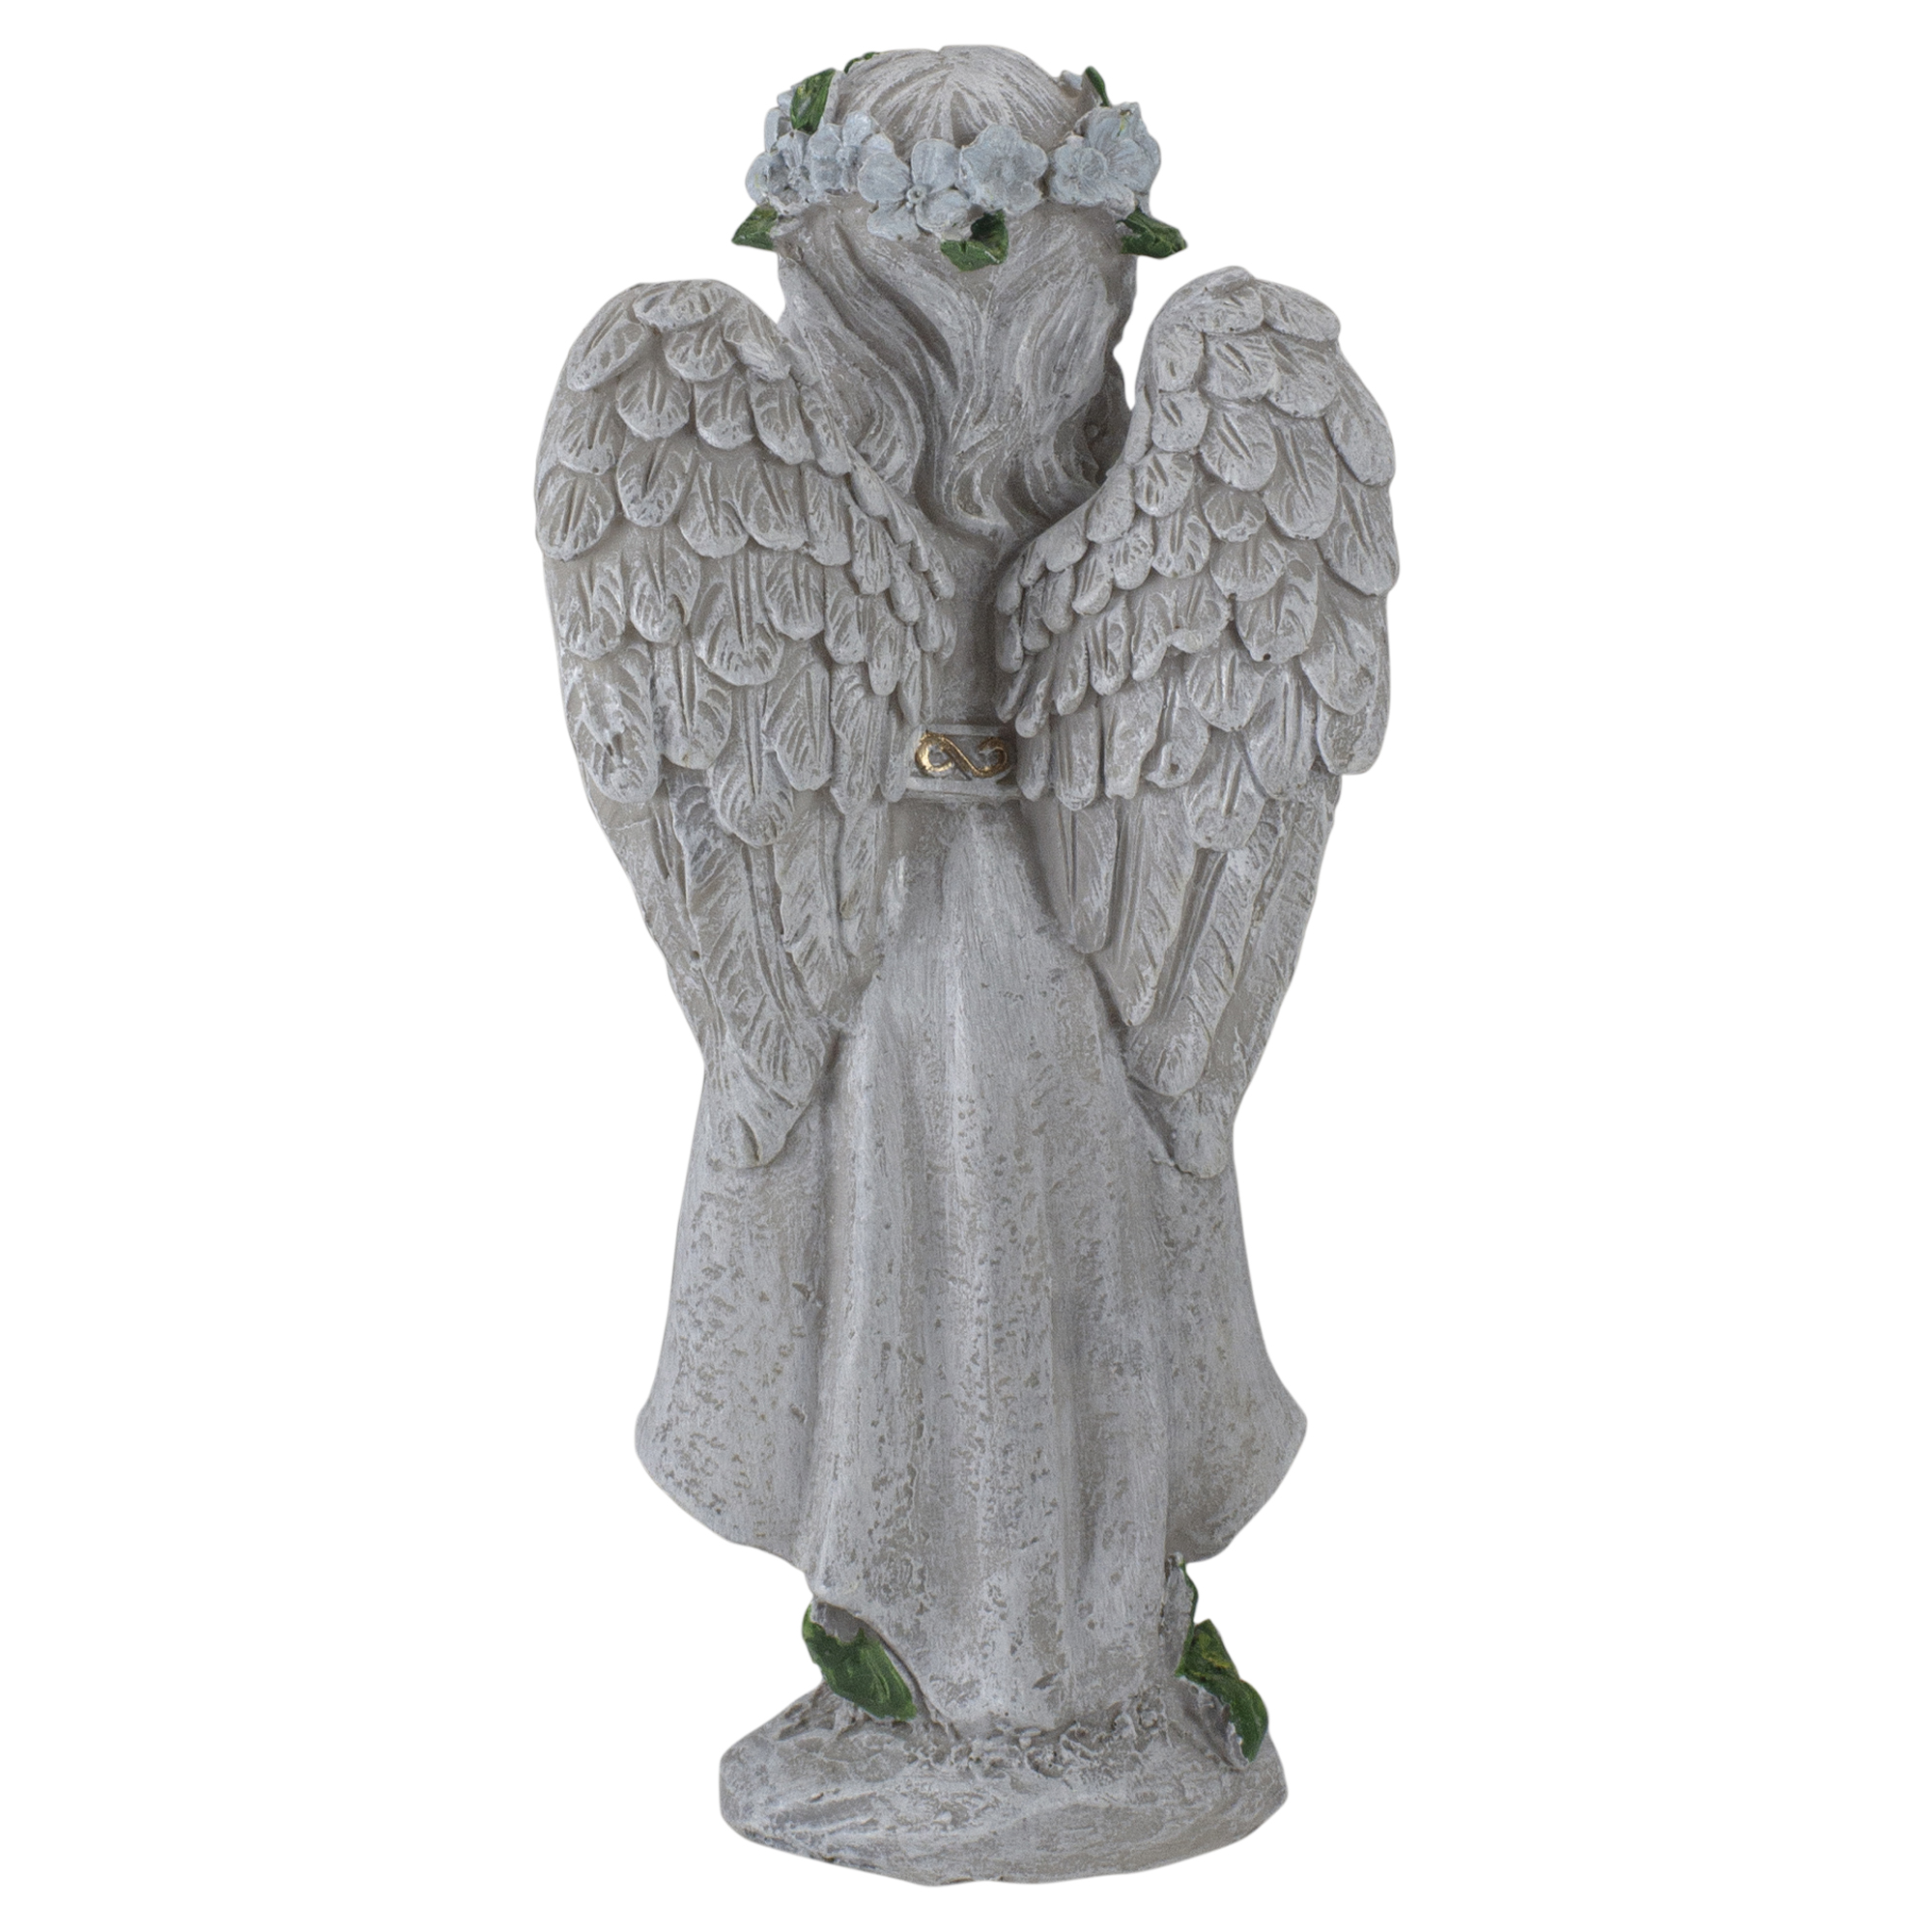 Northlight 10" Angel Standing in Prayer Outdoor Garden Statue - image 3 of 5